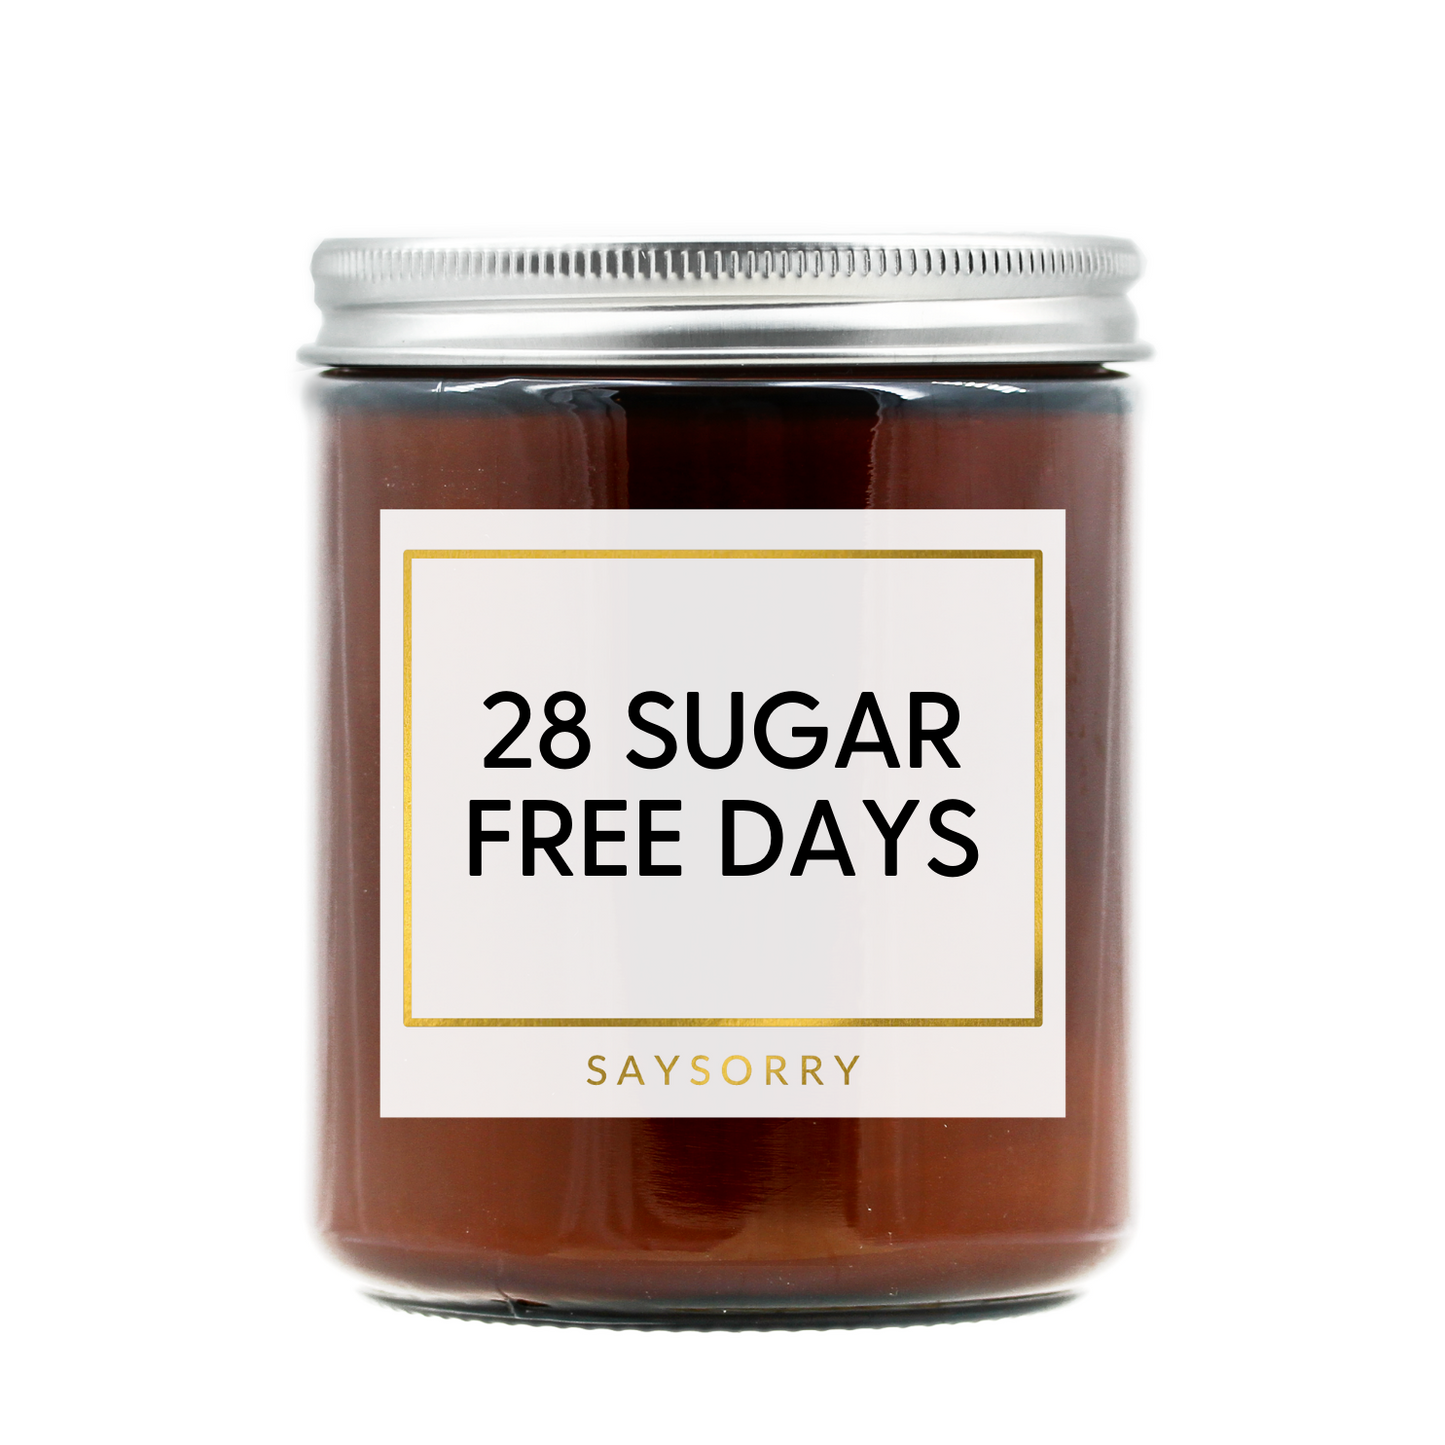 »28 Sugar Free Days« handgegossene Affirmations-Duftkerze in Premium-Qualität